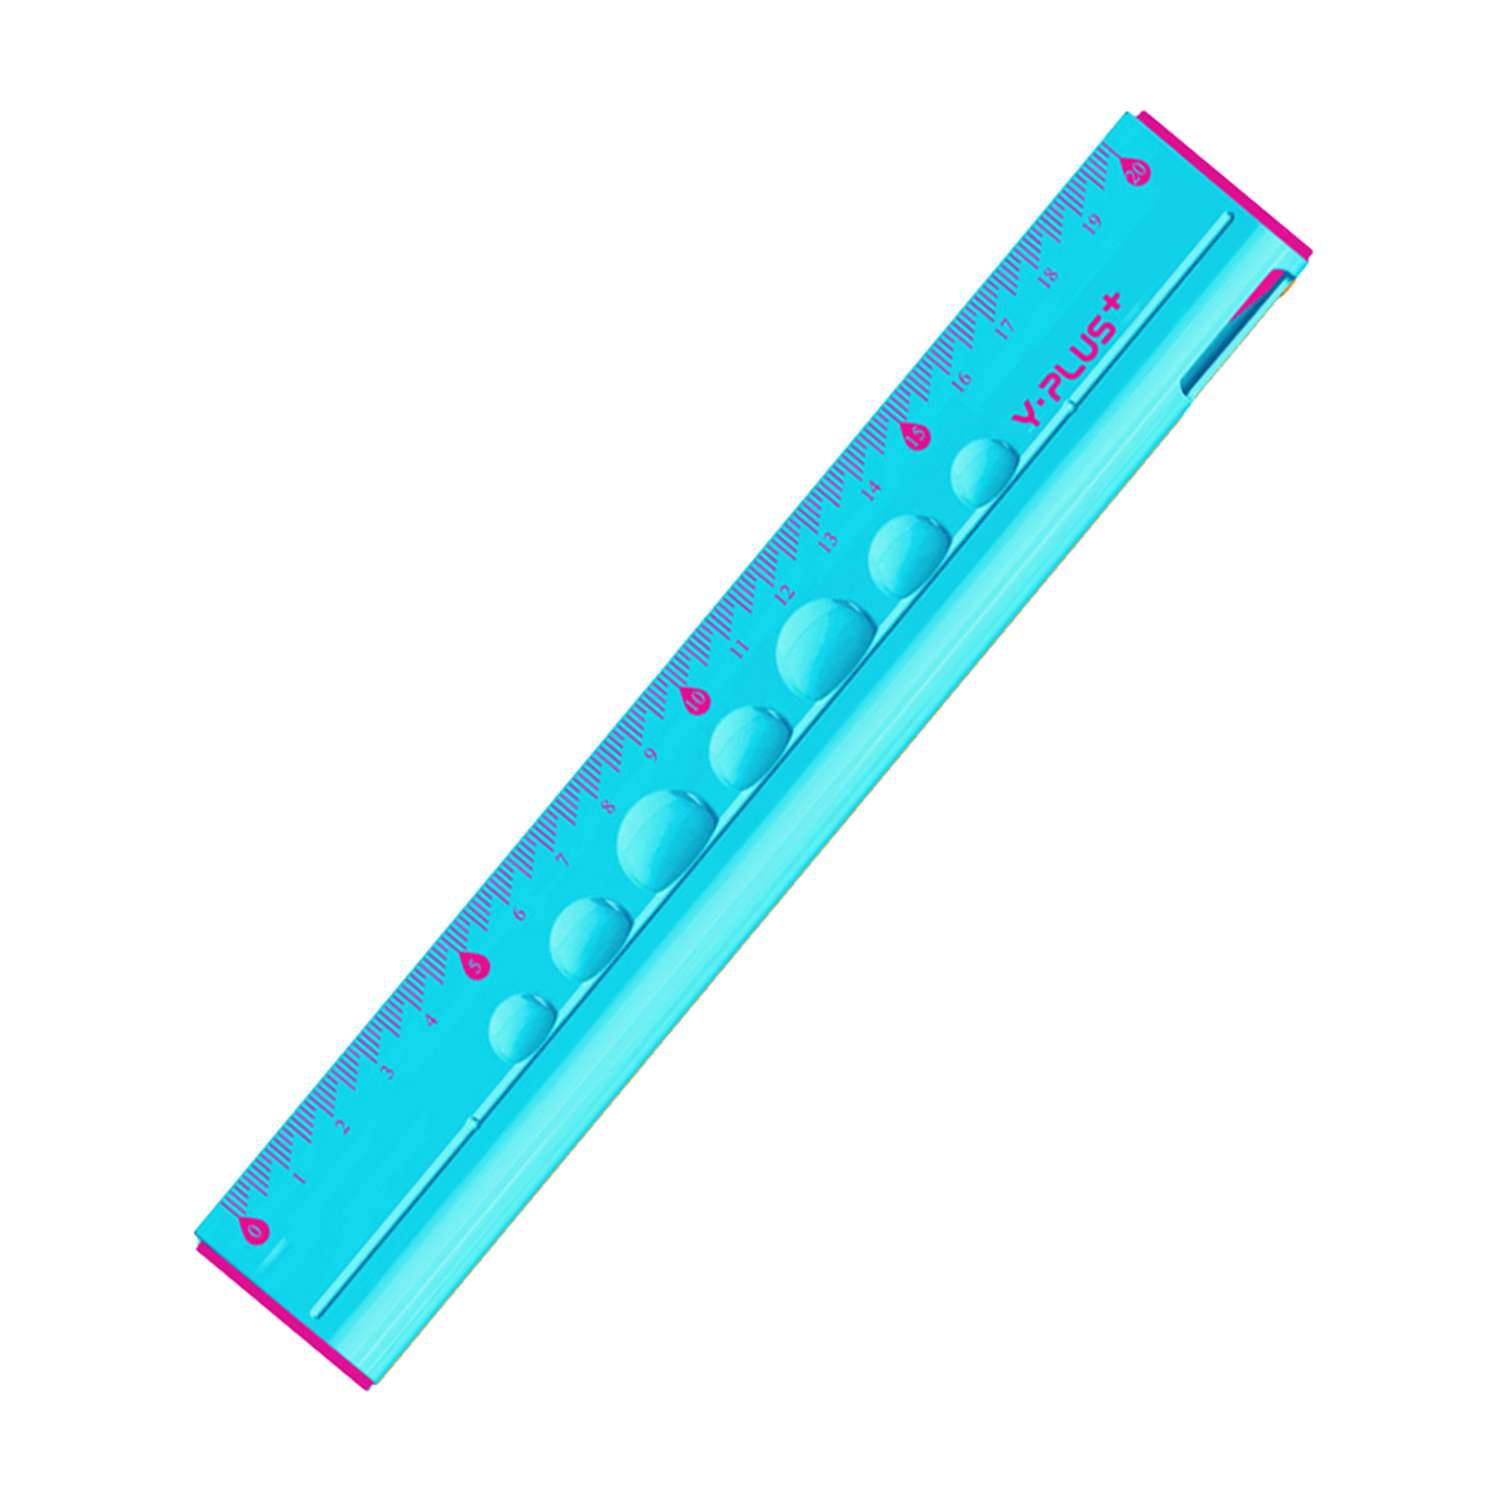 Линейка Y-plus 20см + точилка + ластик + чернографитный карандаш голубая пластиковая RX170100 BU - фото 1